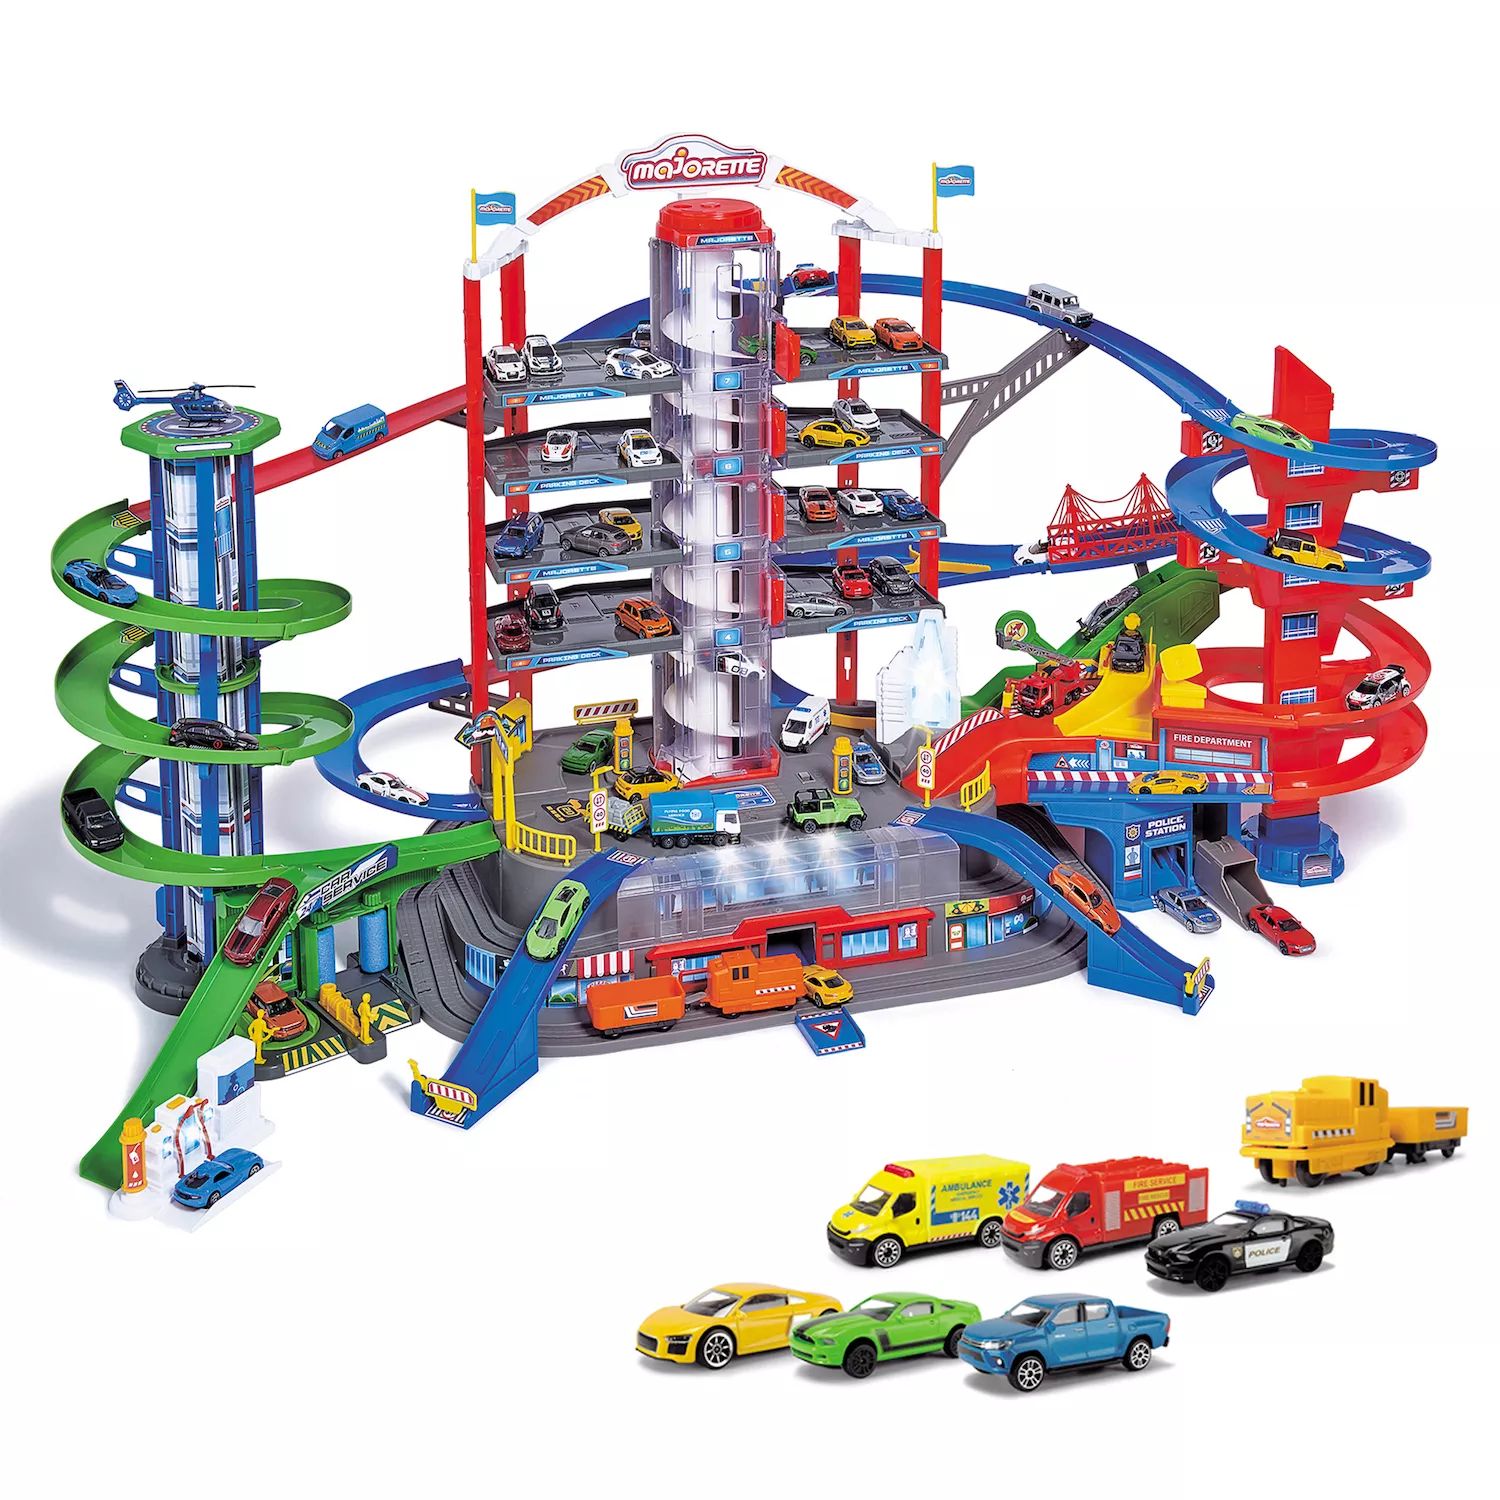 Игровой набор Dickie Toys Majorette Super City Garage с 6 литыми машинками Dickie Toys dickie toys полицейская остановка